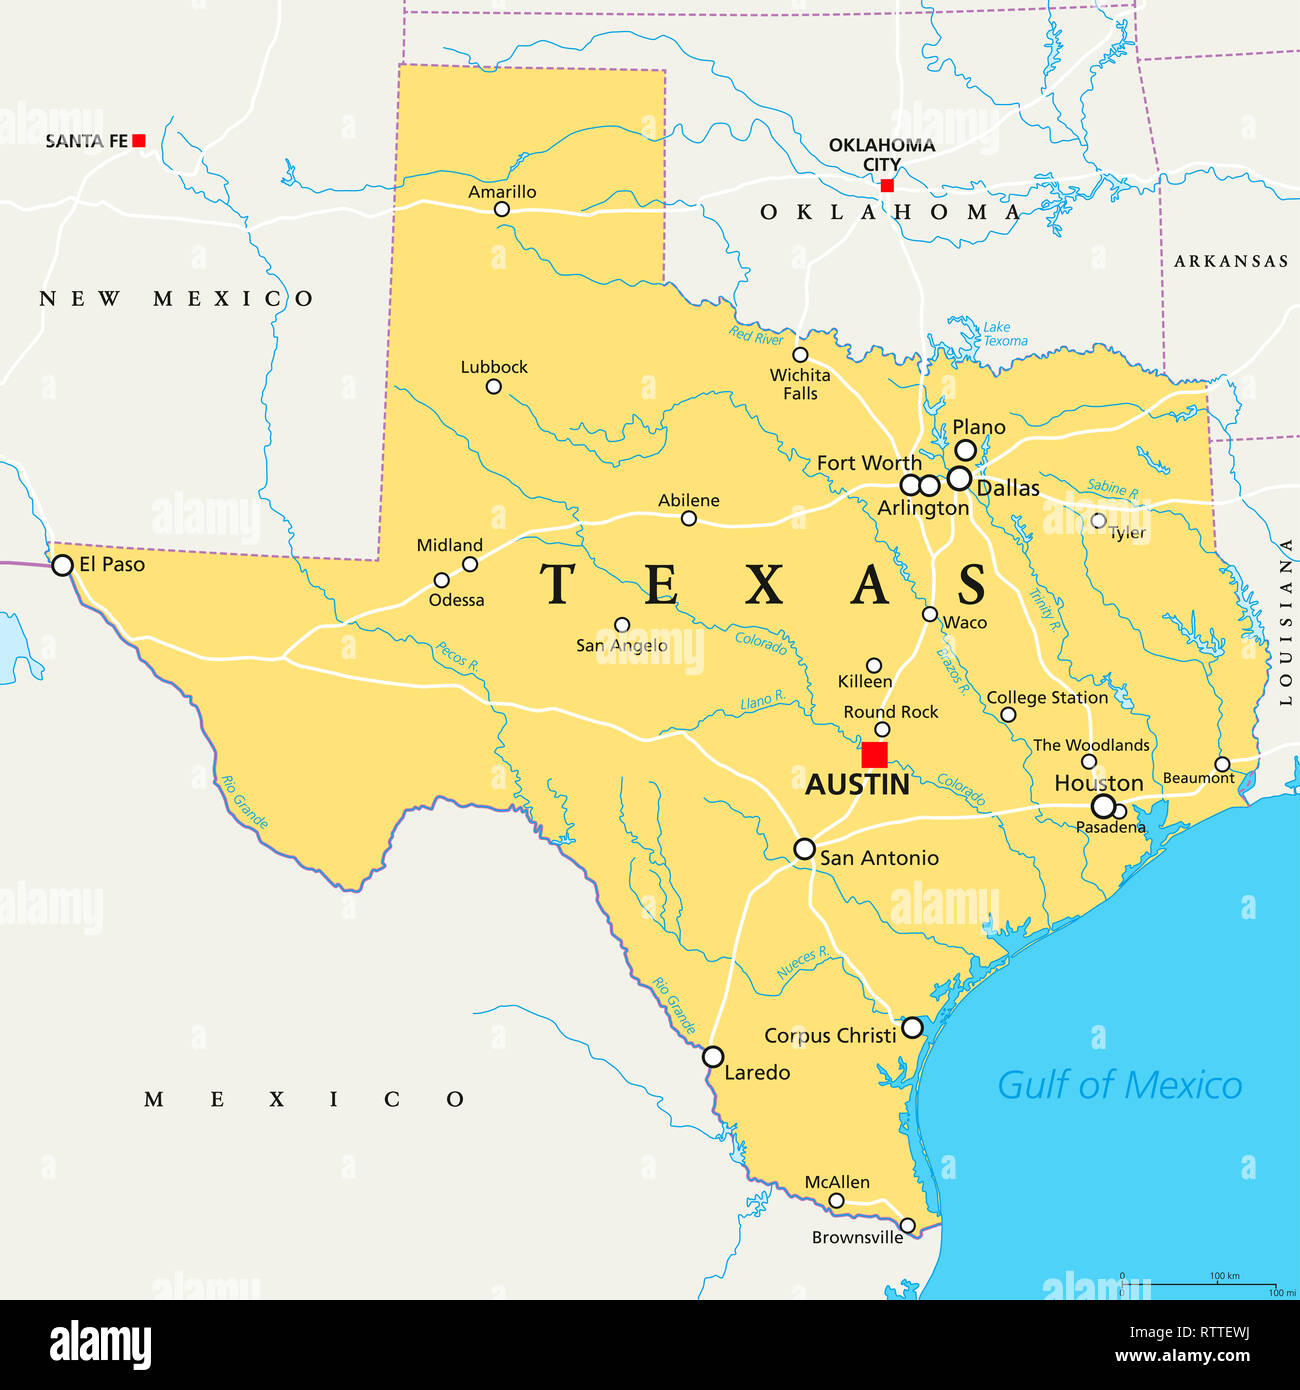 Texas, politische Karte, mit Hauptstadt Austin, Grenzen, wichtige Städte, Flüsse und Seen. Zustand in der South Central Region der Vereinigten Staaten. Stockfoto